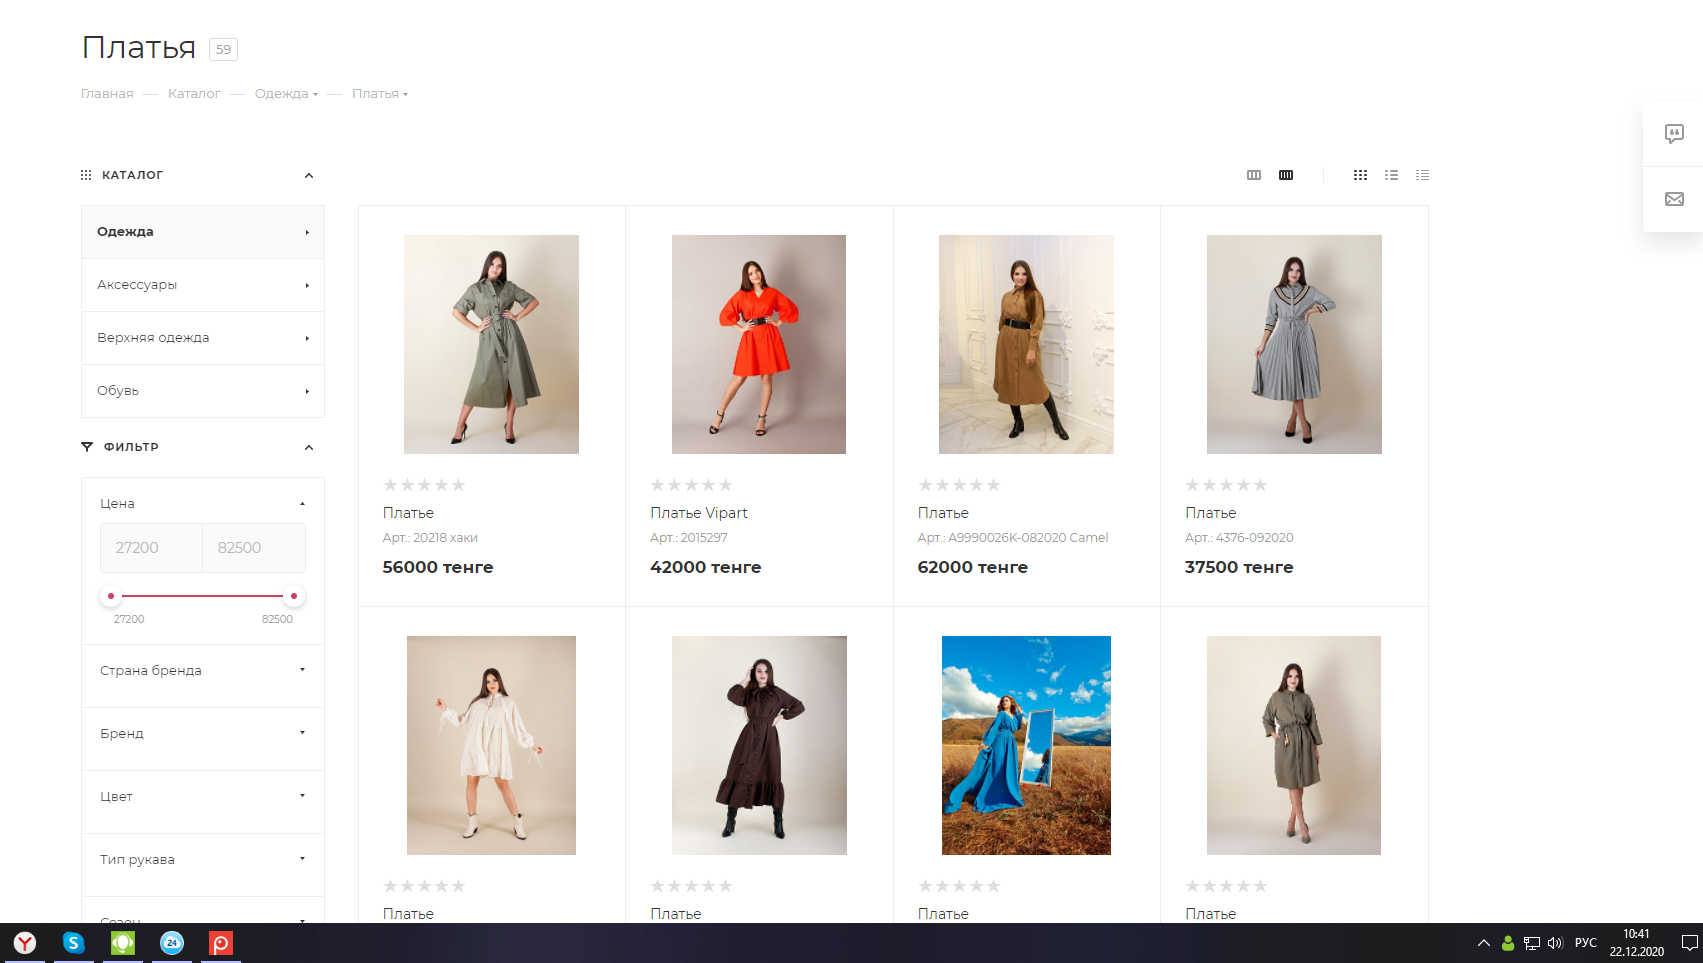 интернет-магазин женской одежды, обуви и аксессуаров